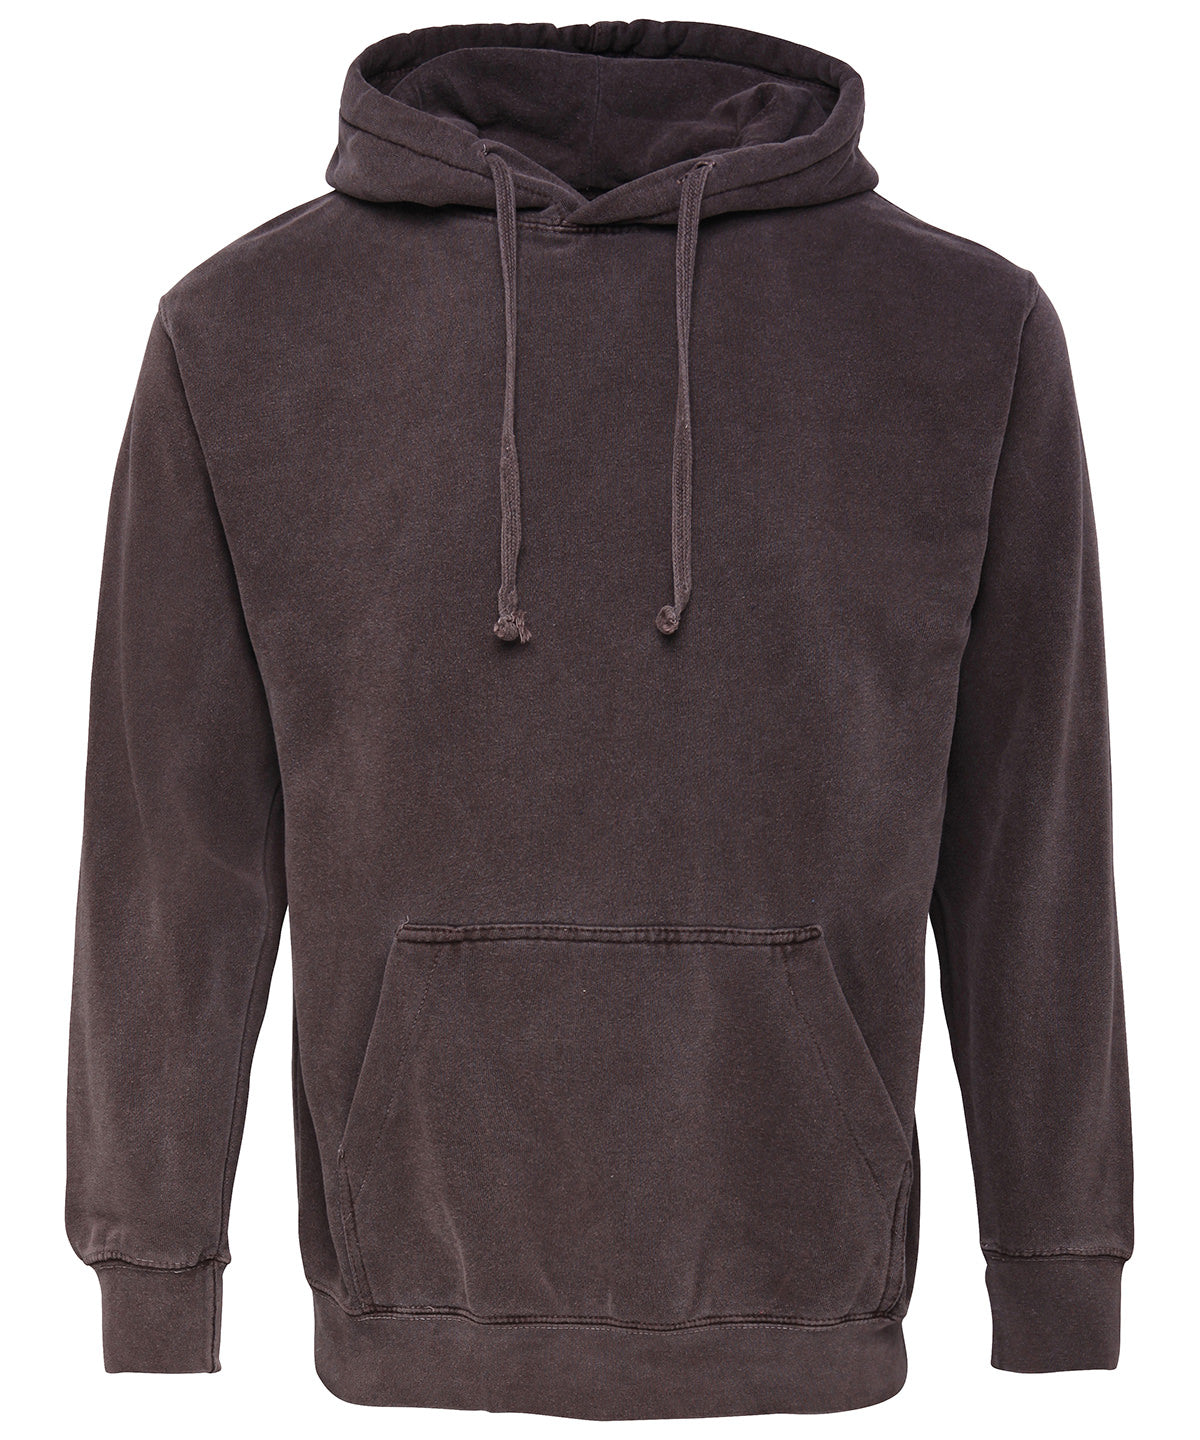 Hettupeysur - Adult Hooded Sweatshirt